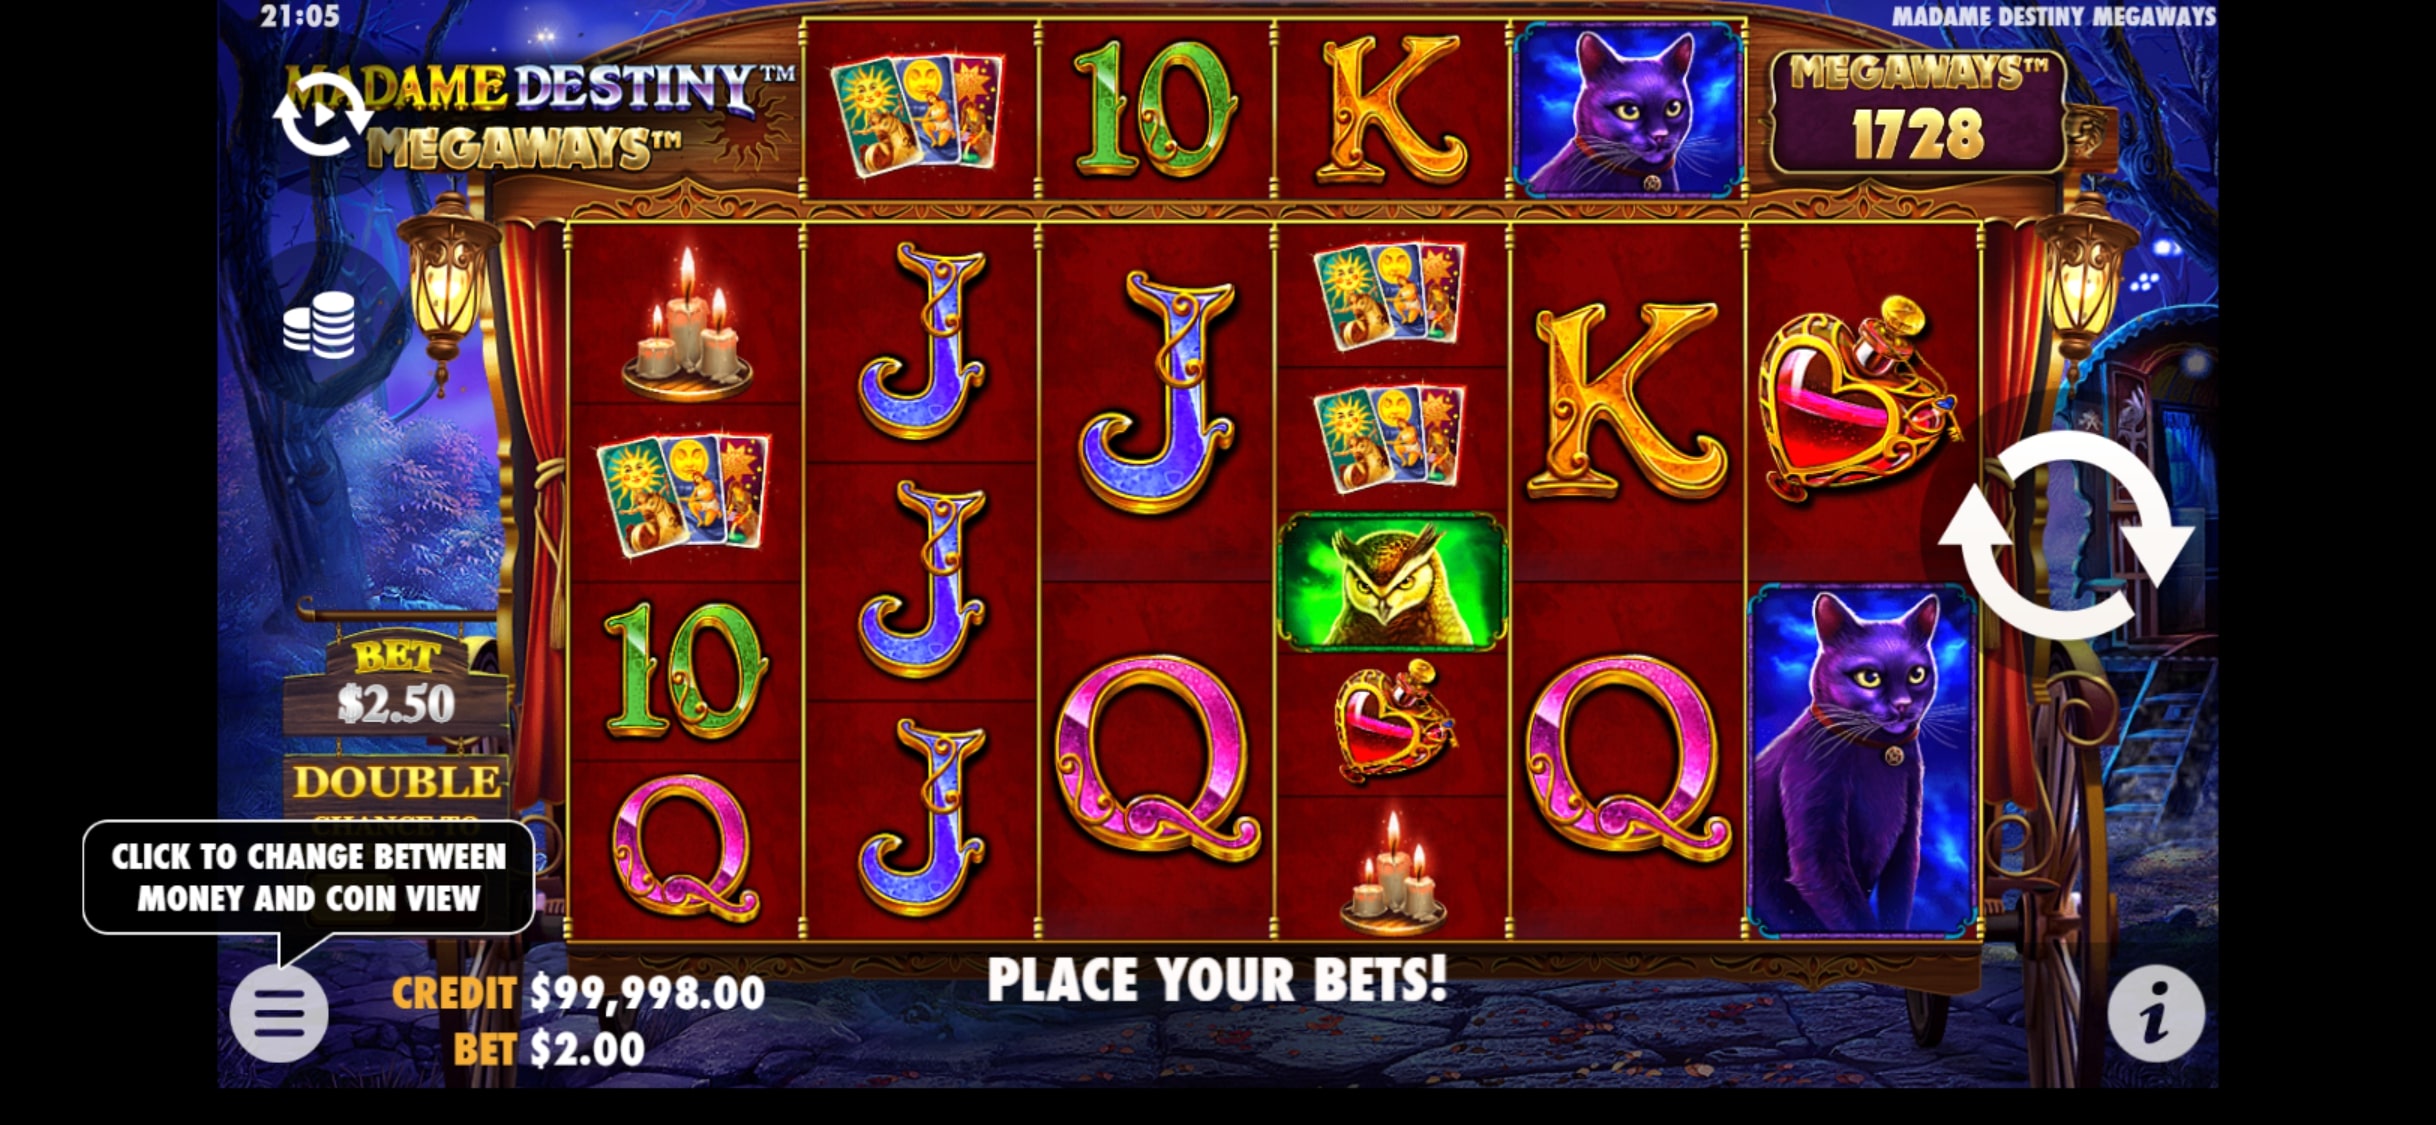 BAO Casino Mobile Slot Games Review